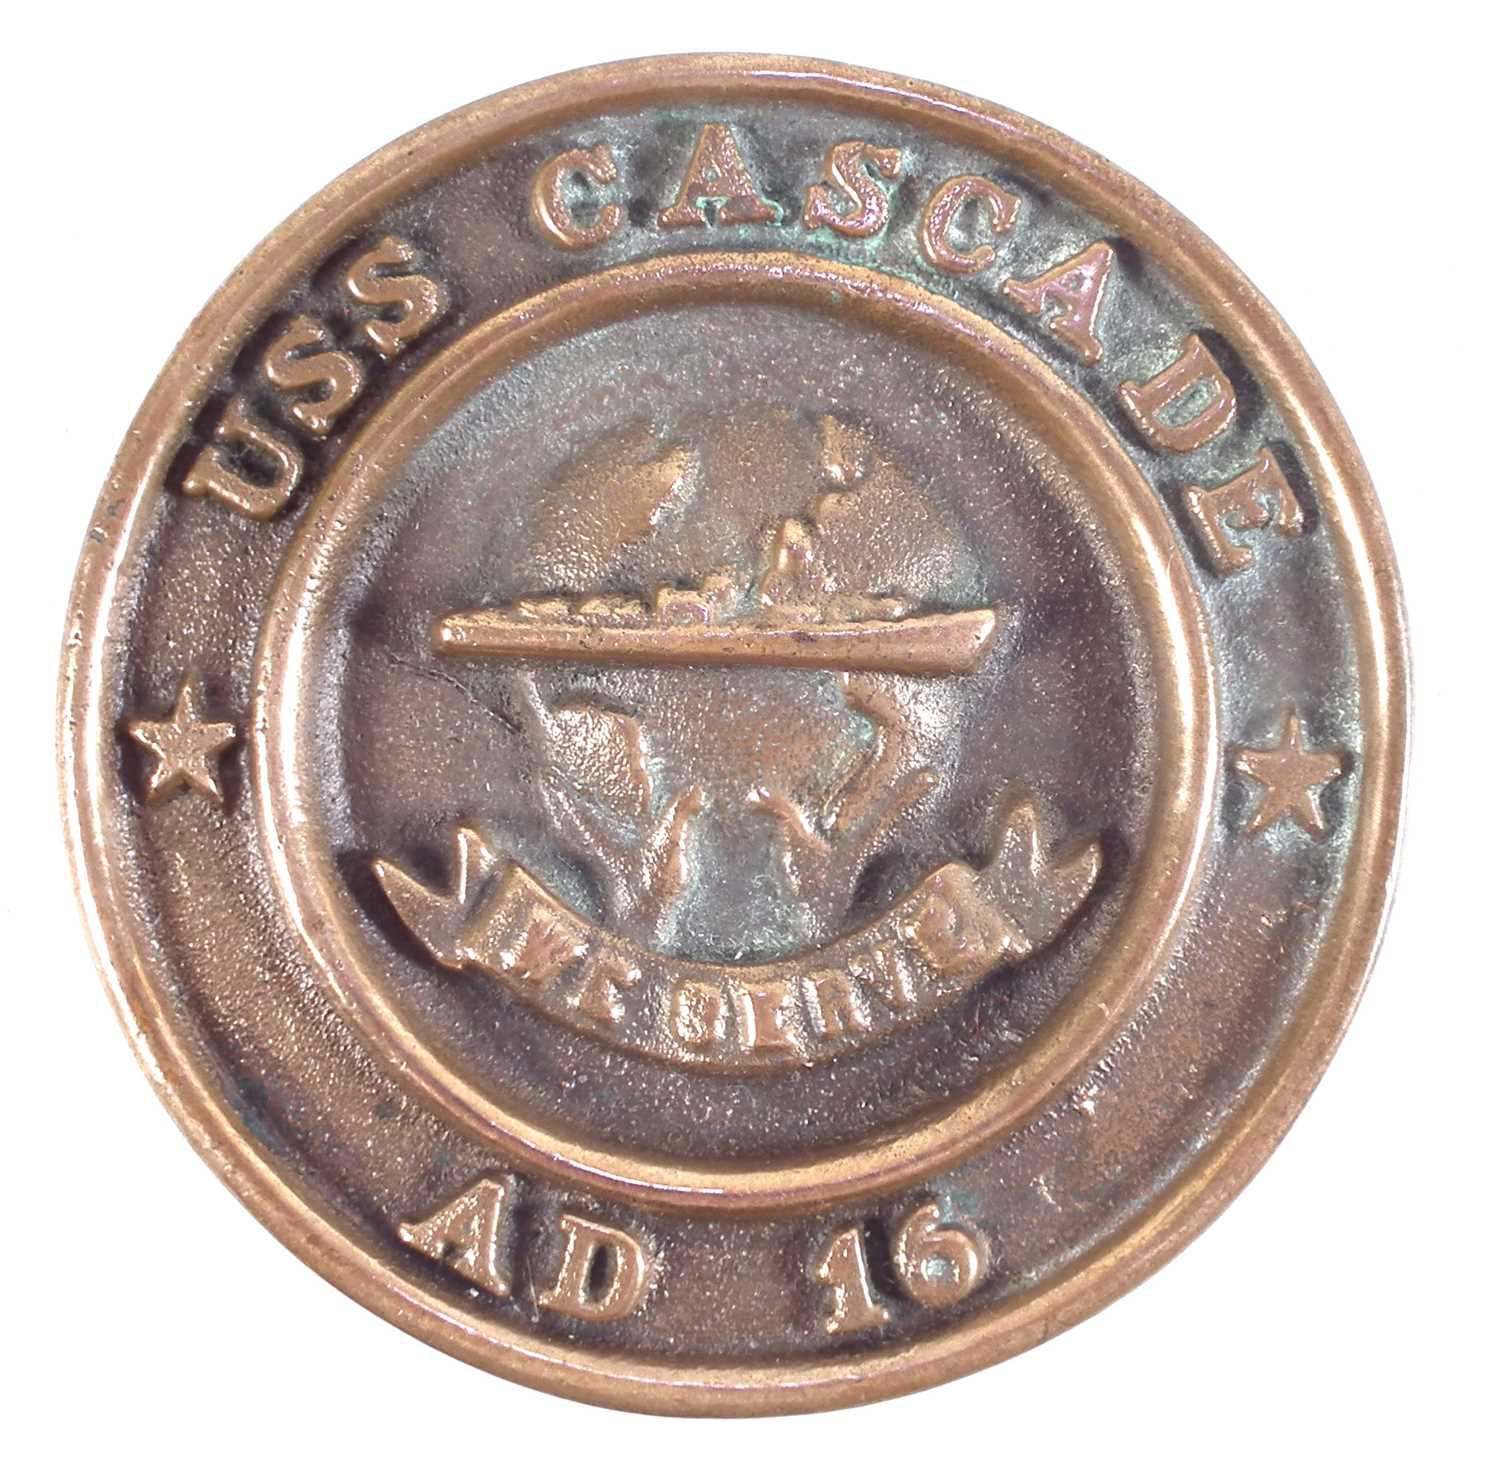 USS Cascade bronze ships plaque